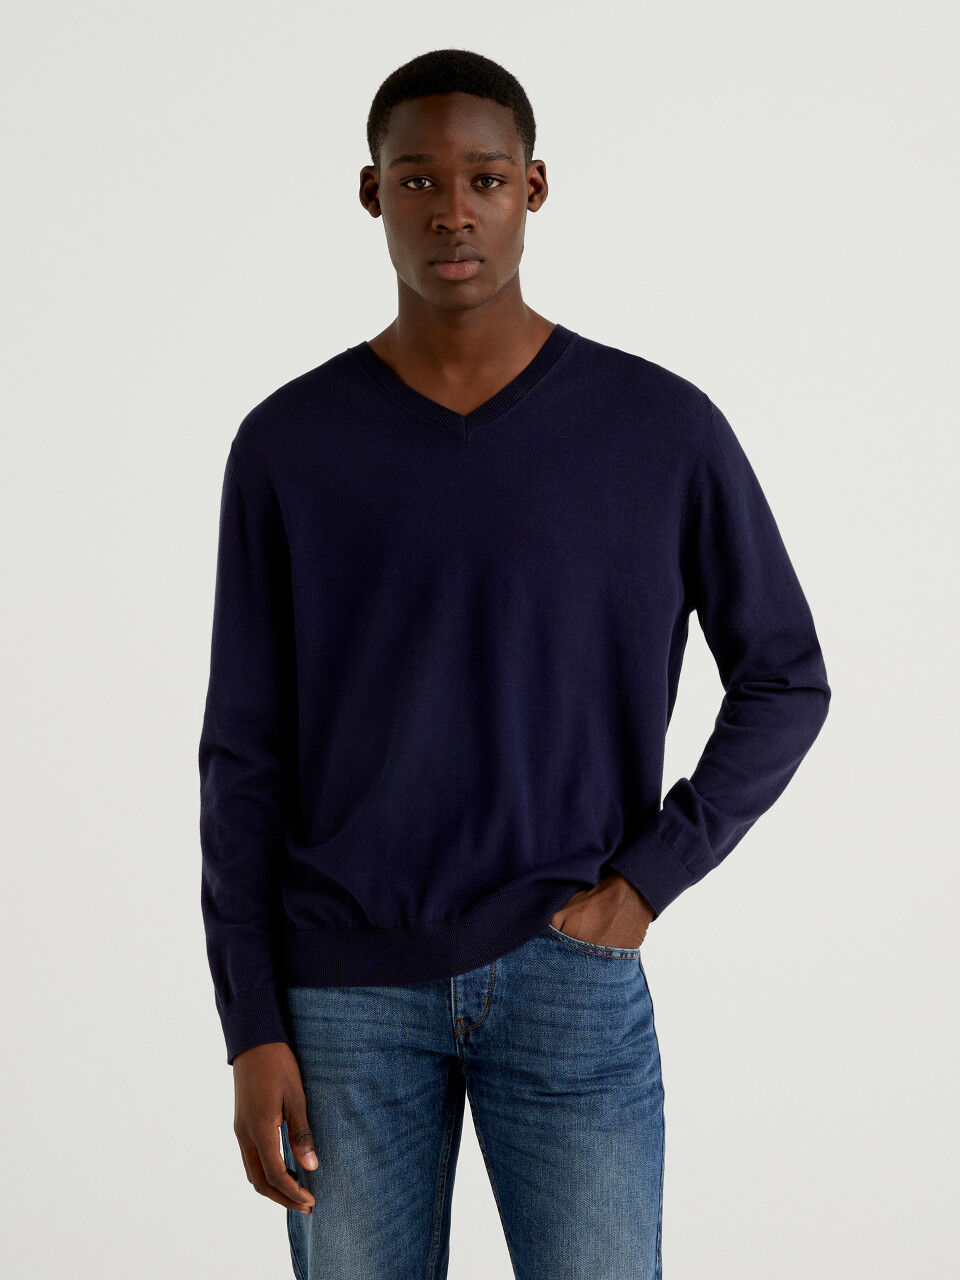 Pullover in einer leichten Baumwollmischung mit V-Ausschnitt